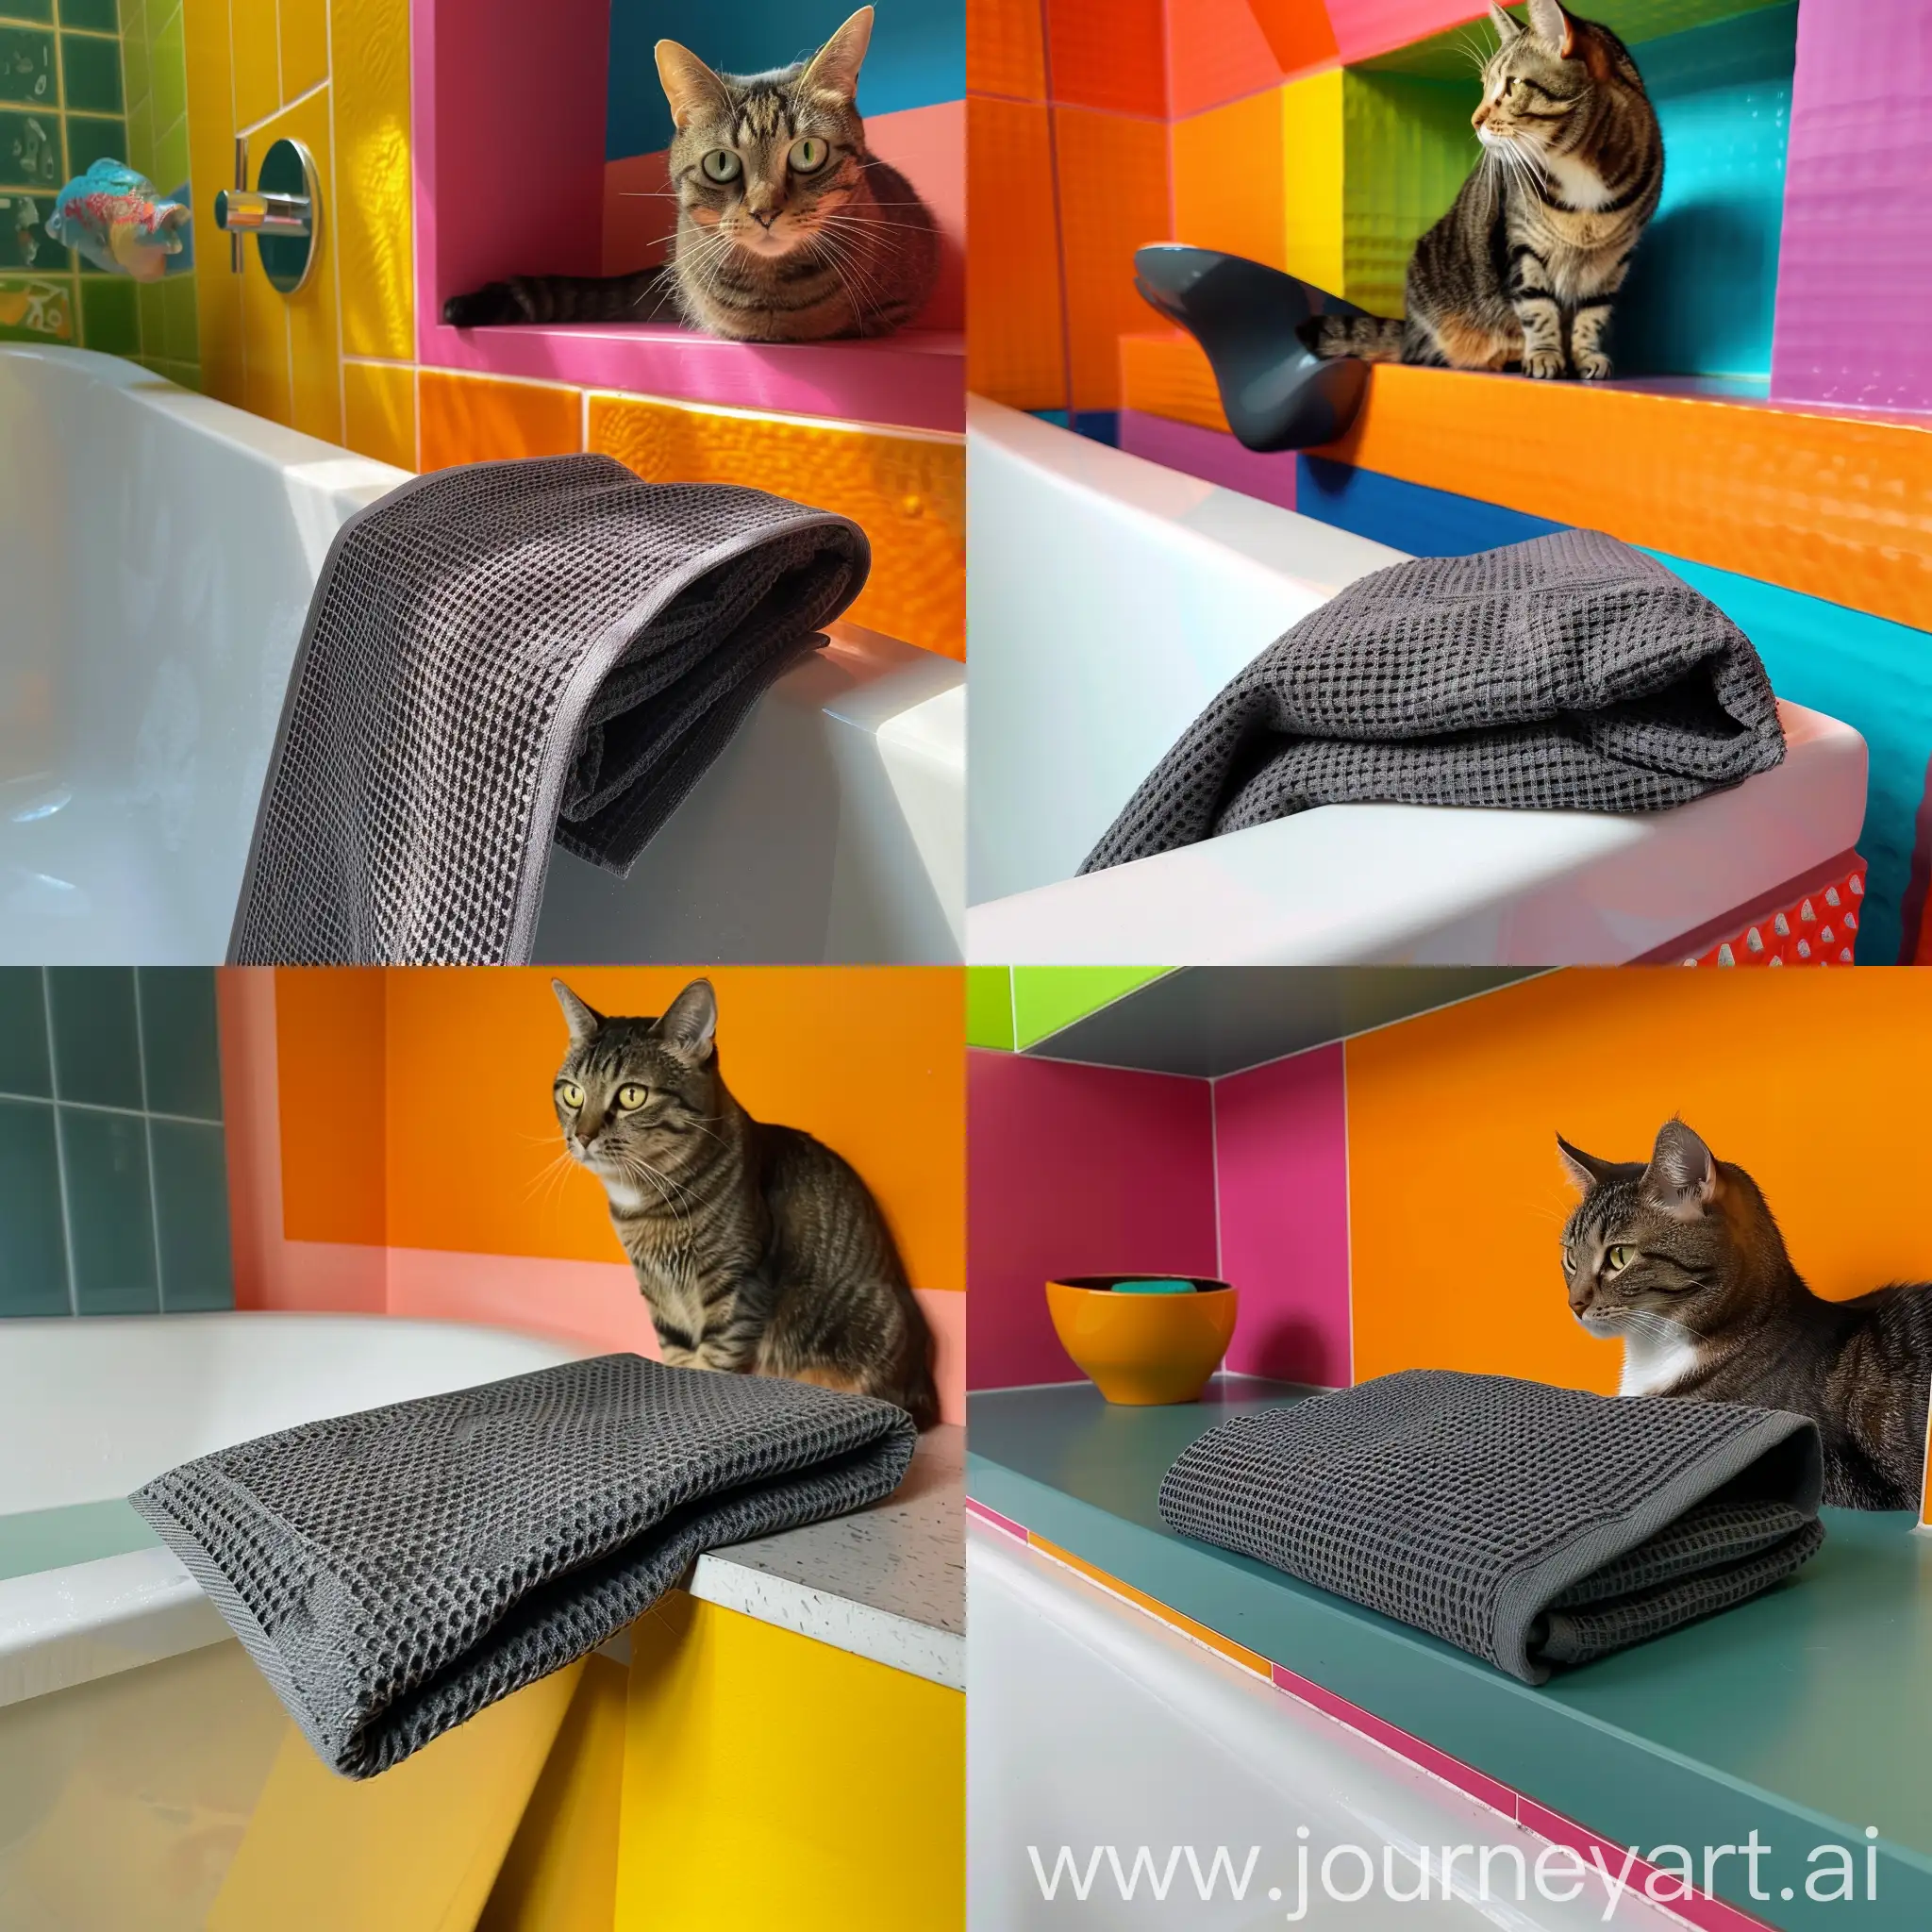 вафельное полотенце, цвета графит. Сложенное лежит на краю ванны. в ванной комнате светлого цвета, с дорогим ремонтом. С боку на тумбе на это полотенце смотрит красивый кот.